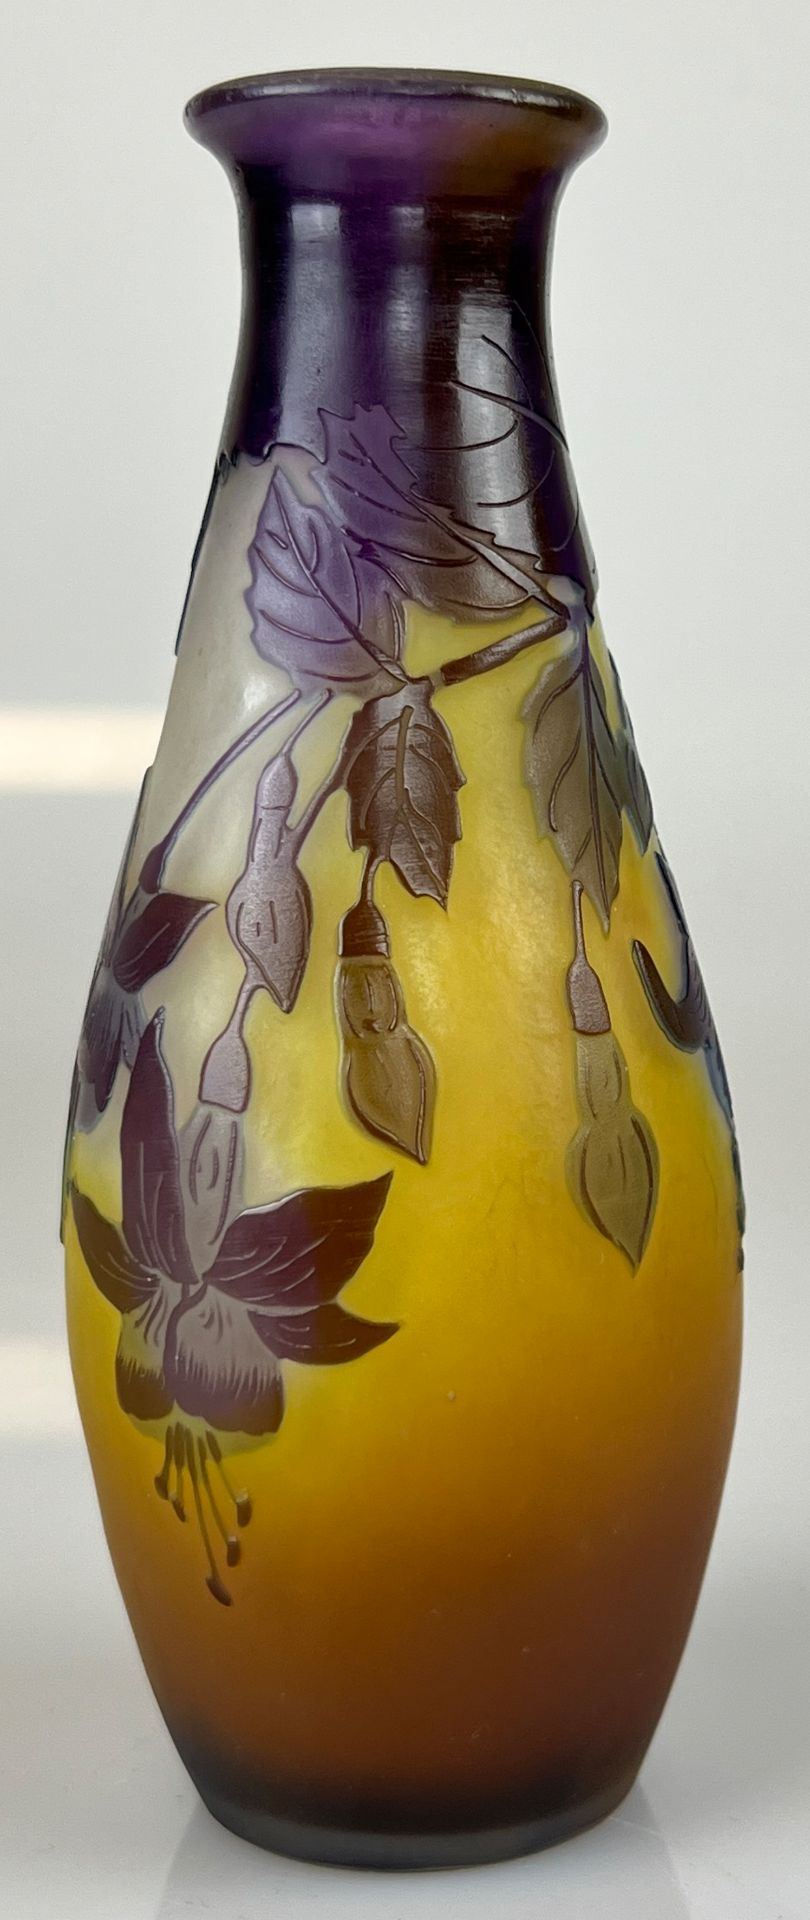 Émile GALLÉ (1846 - 1904). Vase mit Fuchsien. Um 1900. - Image 6 of 11